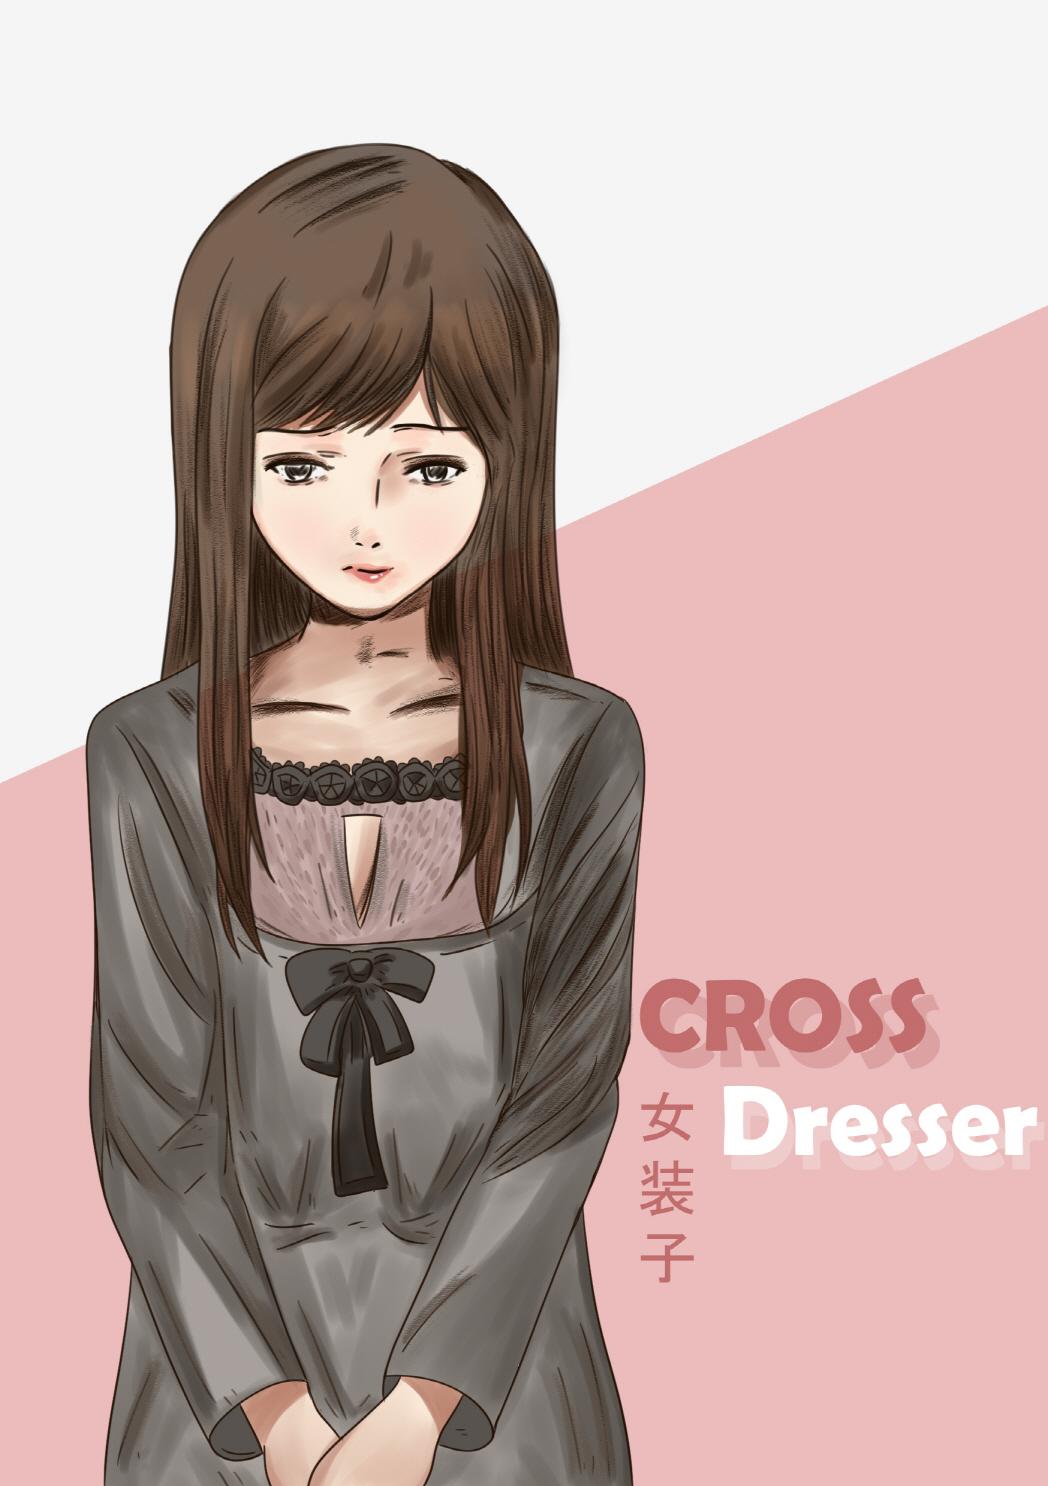 Cross dresser 0